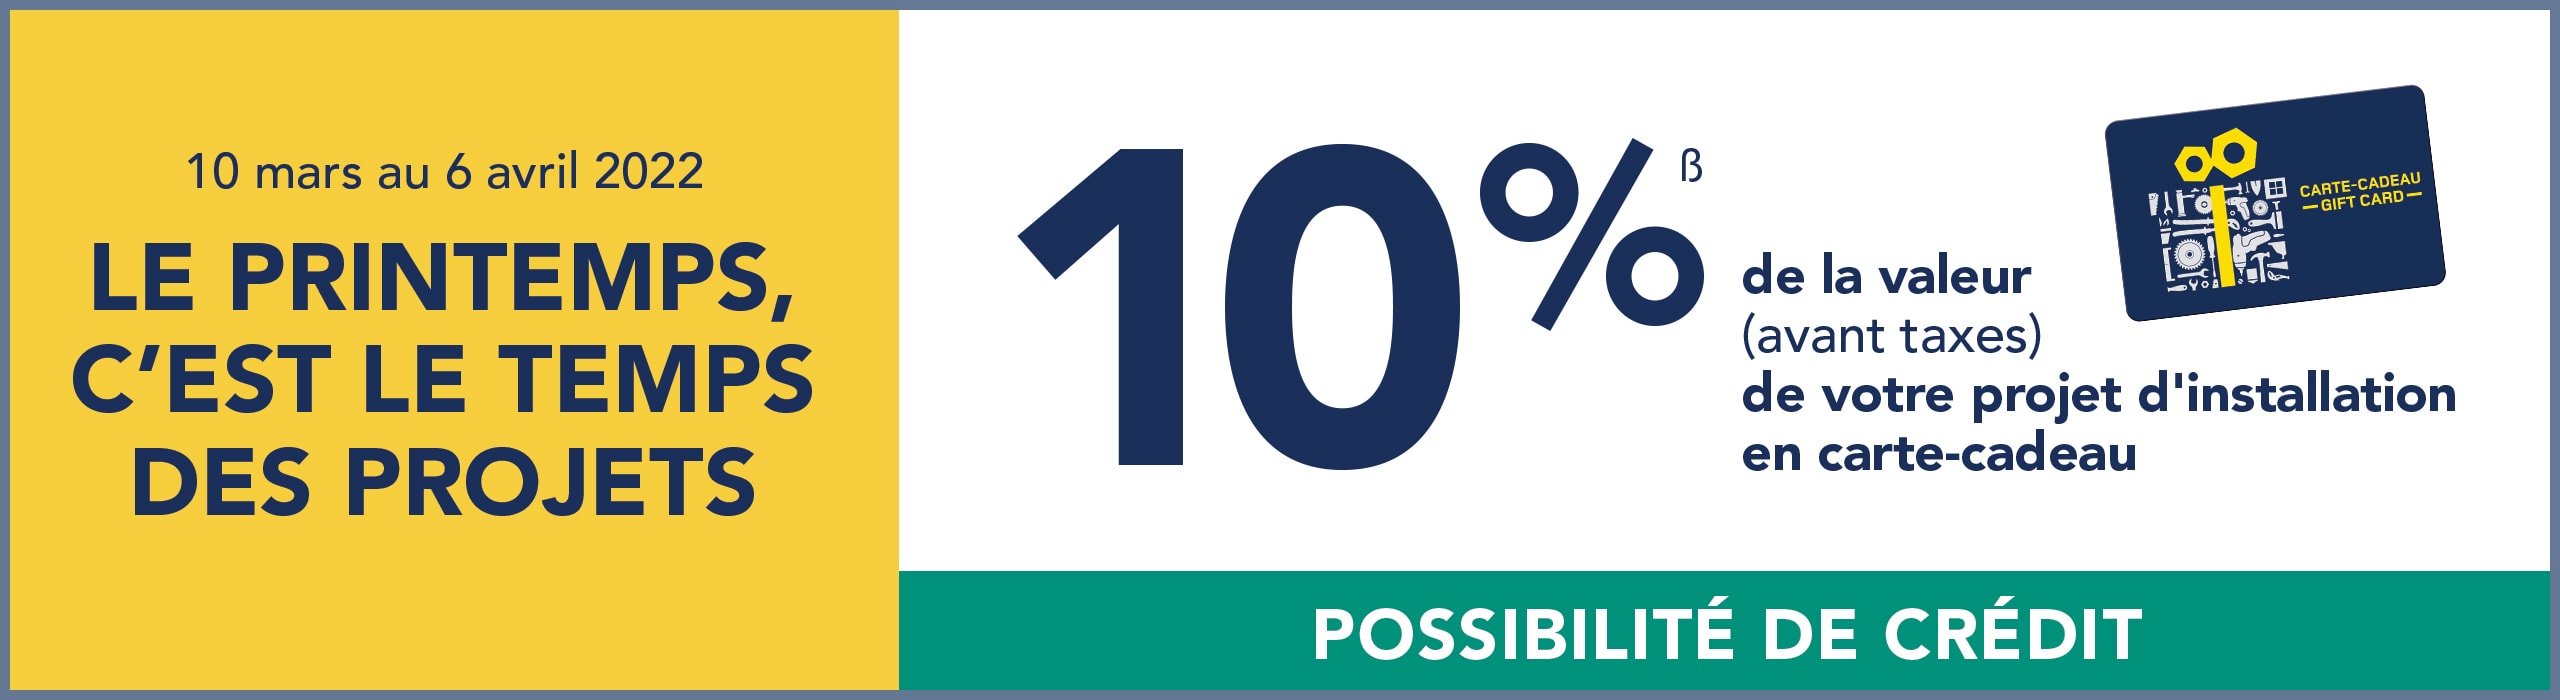 Jusqu'au 6 avril, obtenez 10% de la valeur (avant taxes) de votre projet d'installation en carte-cadeau